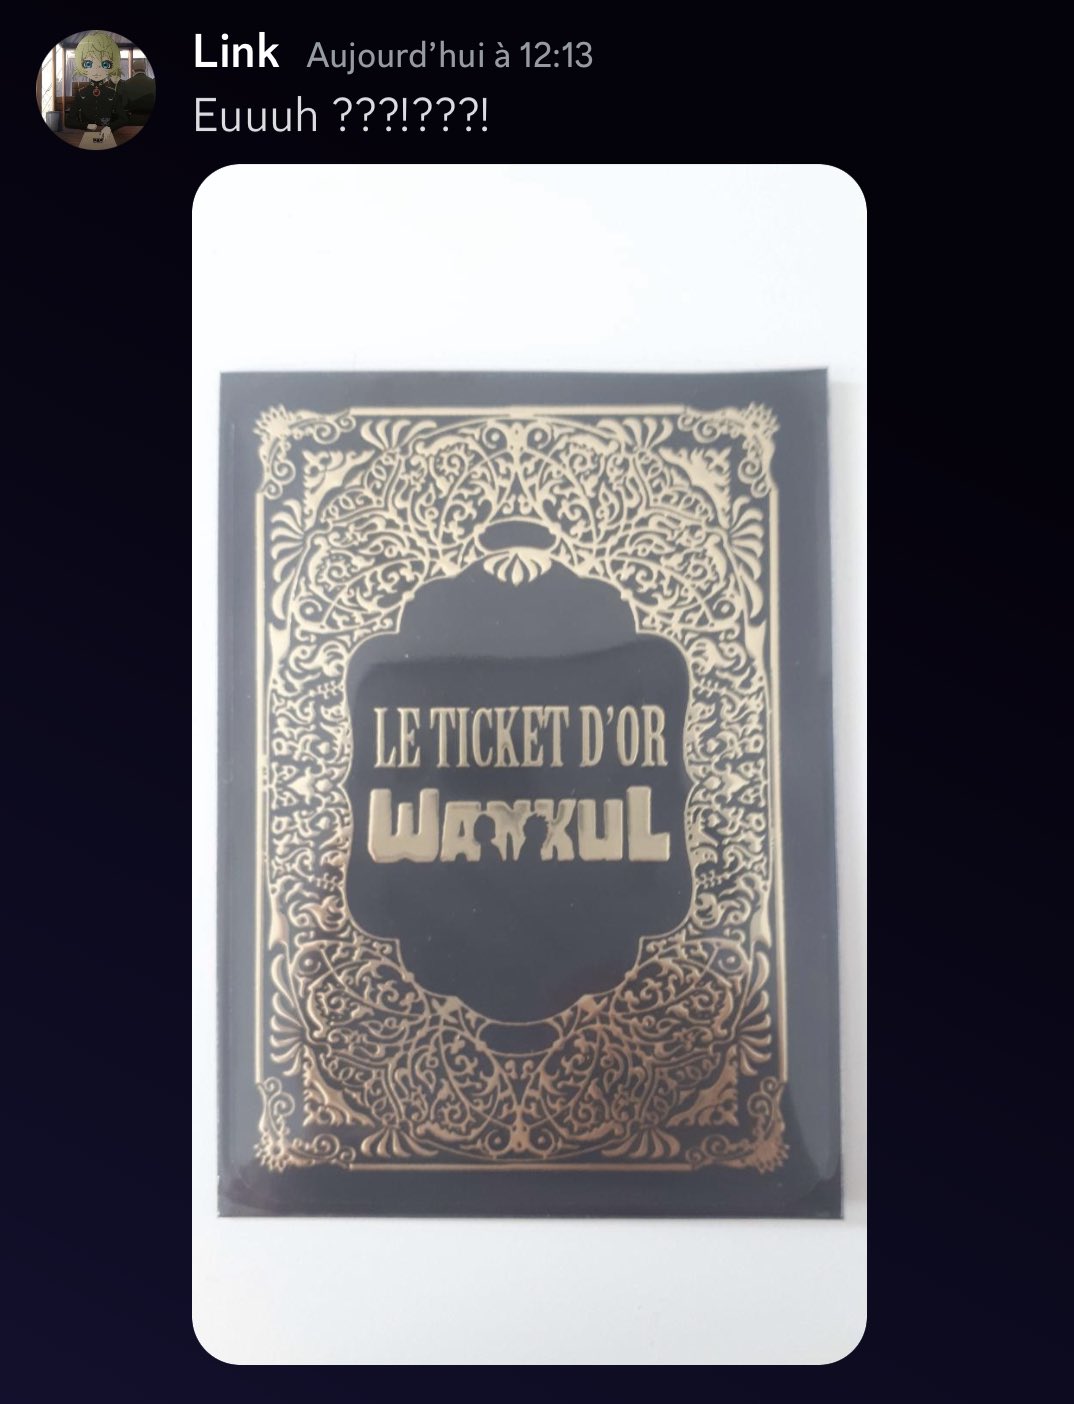 Wankul - Le jeu de cartes à collectionner on X: 🚨 Troisième ticket d'or  trouvé 🚨 C'est via un post Reddit que nous l'apprenons, la redditeuse  Khajithascoin a découvert ce ticket d'or